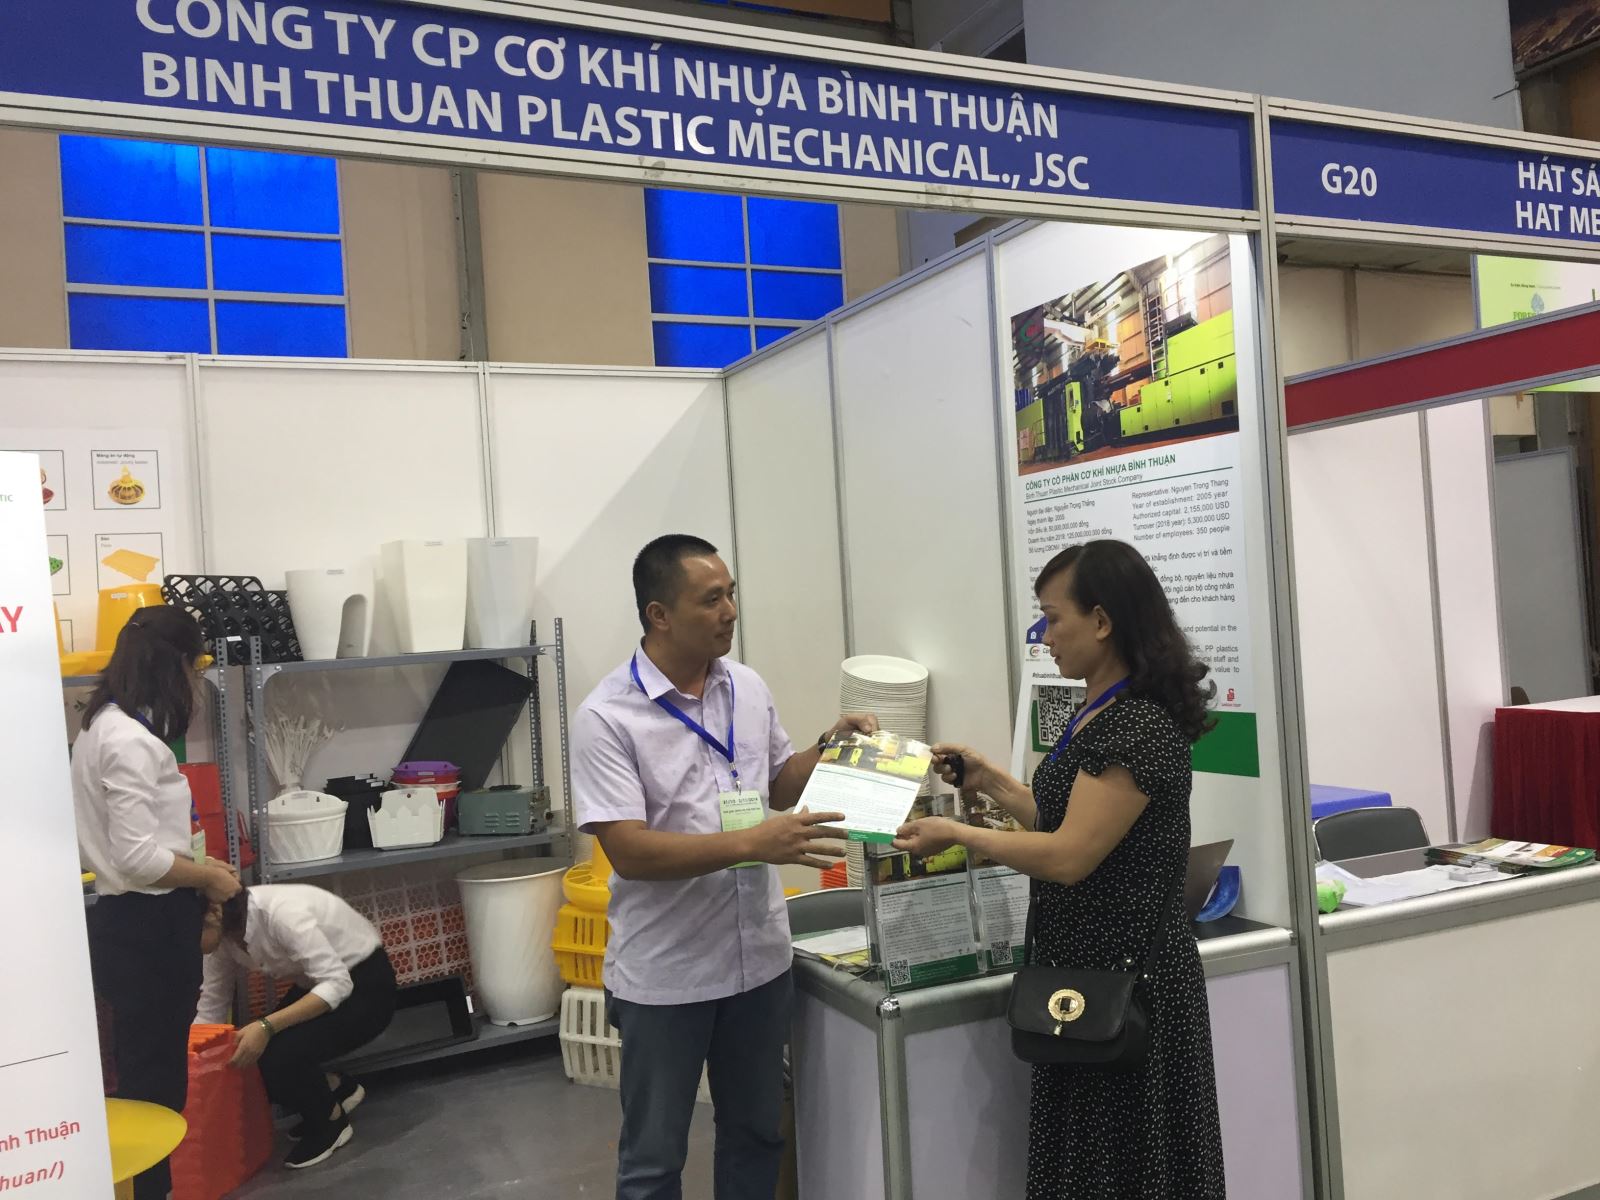 Ông Trần Đăng Khoa, Công ty cơ khí nhựa Bình Thuận giới thiệu sản phẩm 